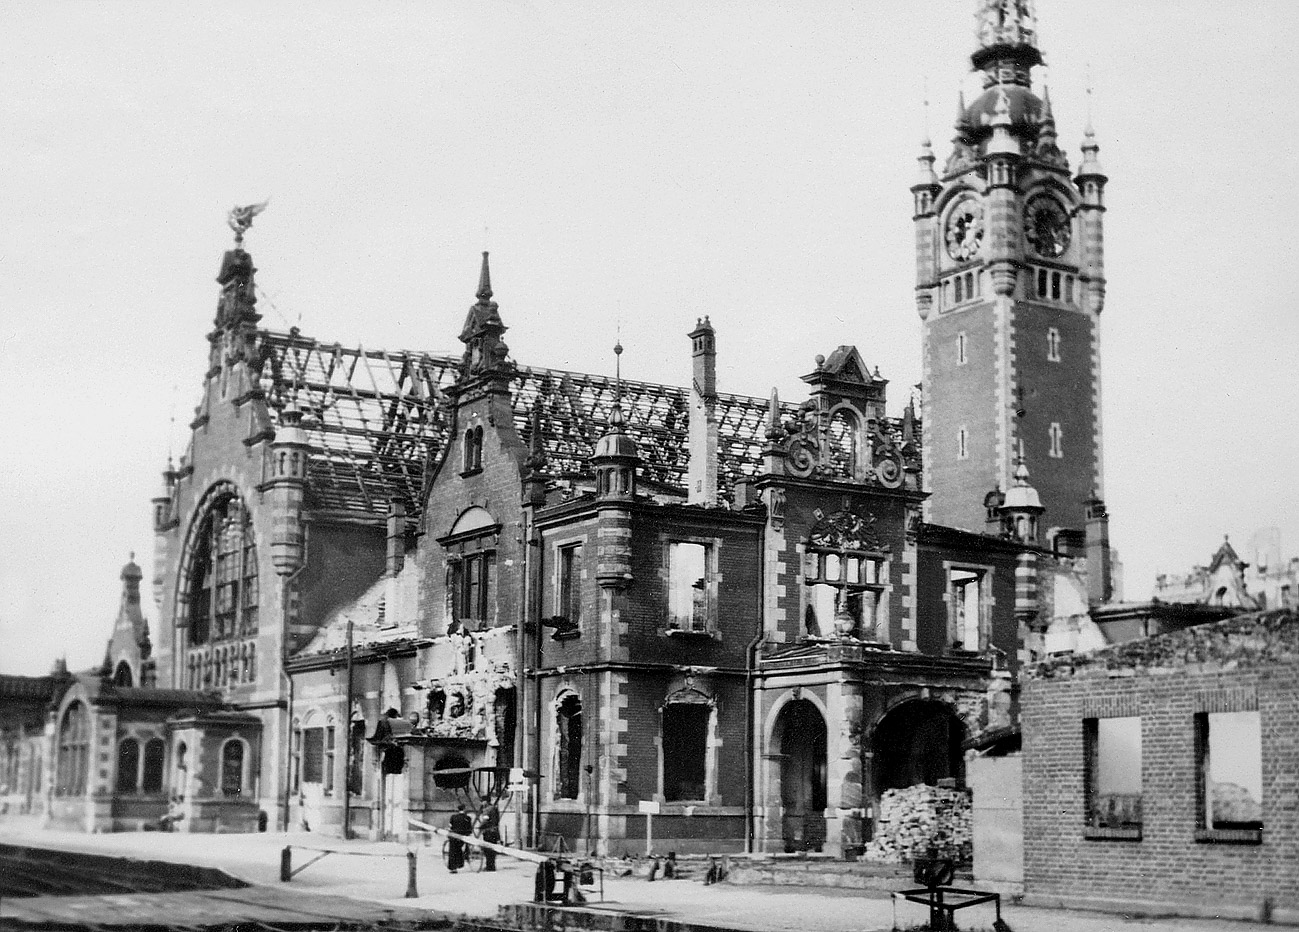 Zniszczony podczas wojny Dworzec Główny w Gdańsku - 1945 r. / The Main Station in Gdańsk, destroyed during the war